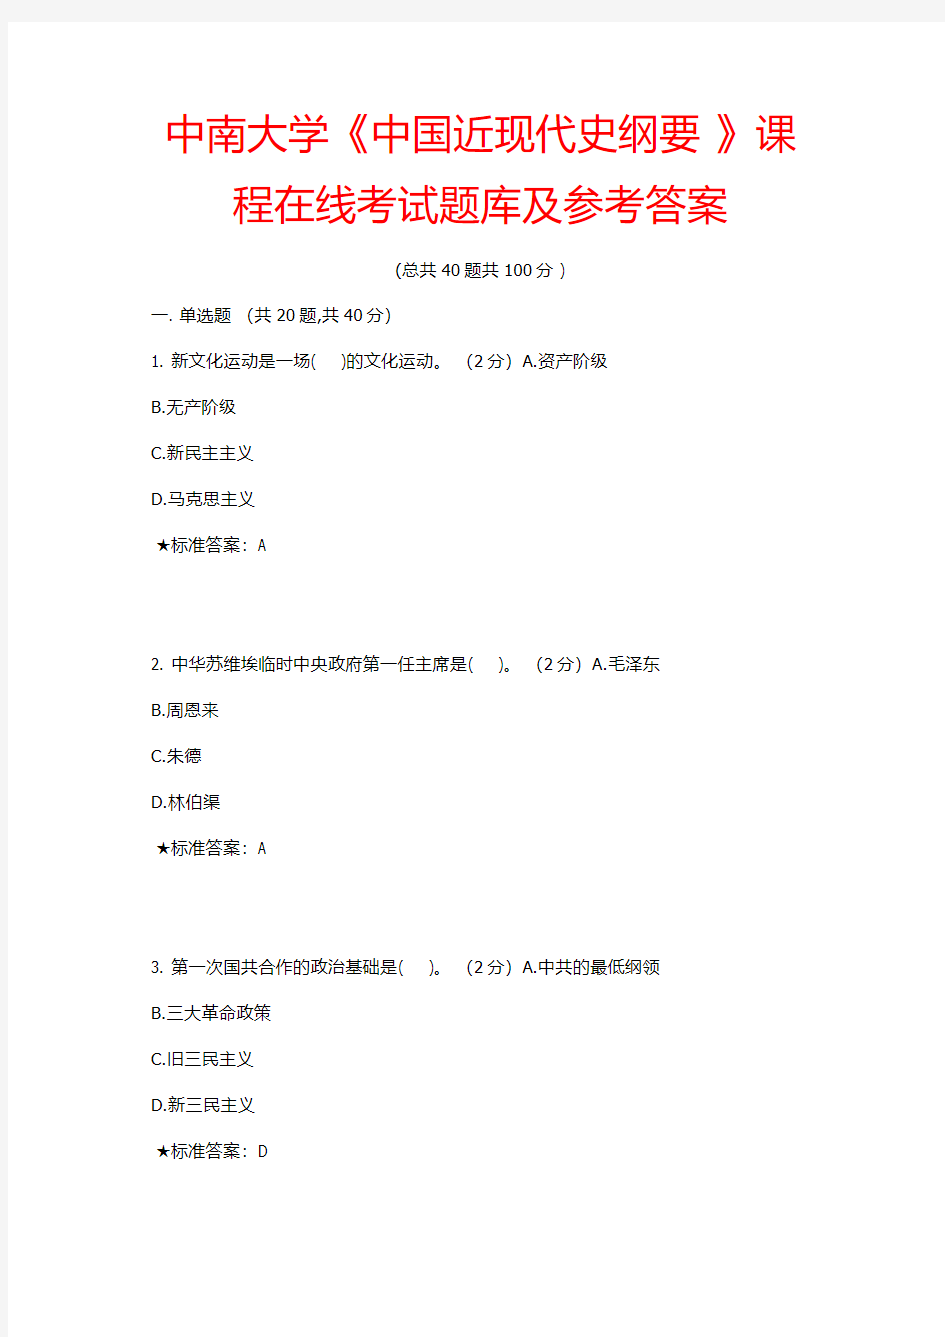 【2014秋季版】中南大学《中国近现代史纲要 》课程在线考试题库及参考答案